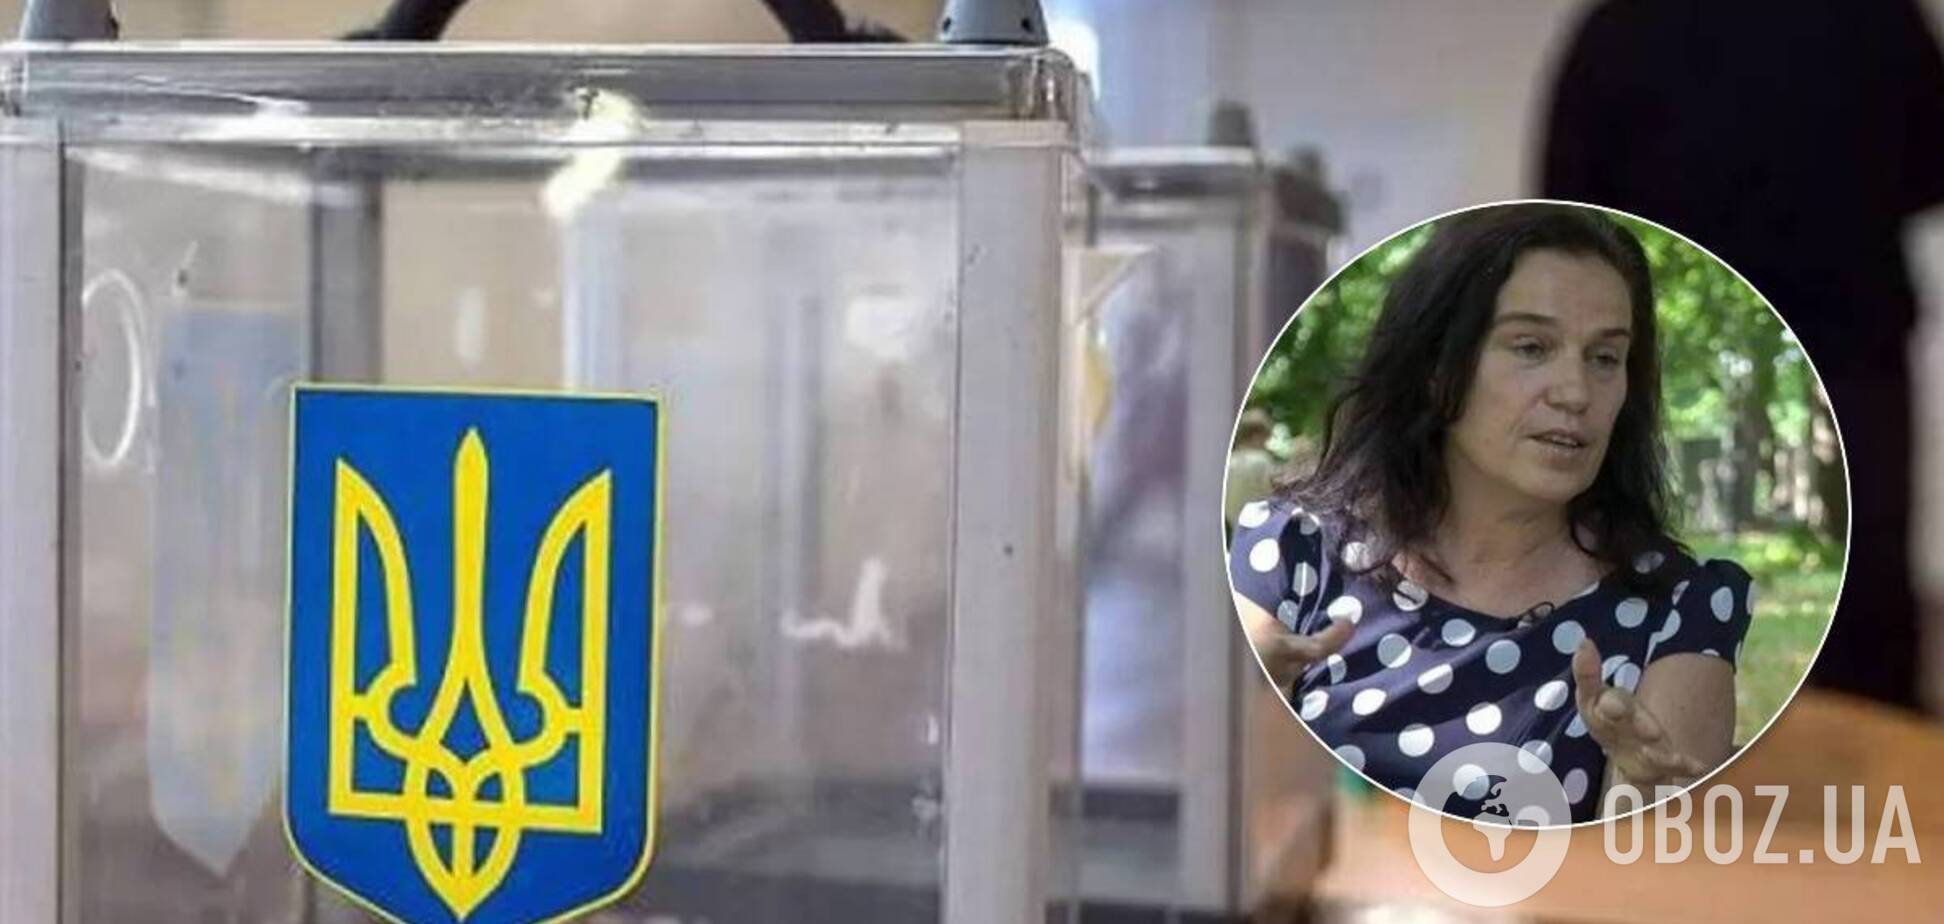 Євгенія Йепес-Віньеса вважає, що вибори на Донбасі зараз нереально проводити